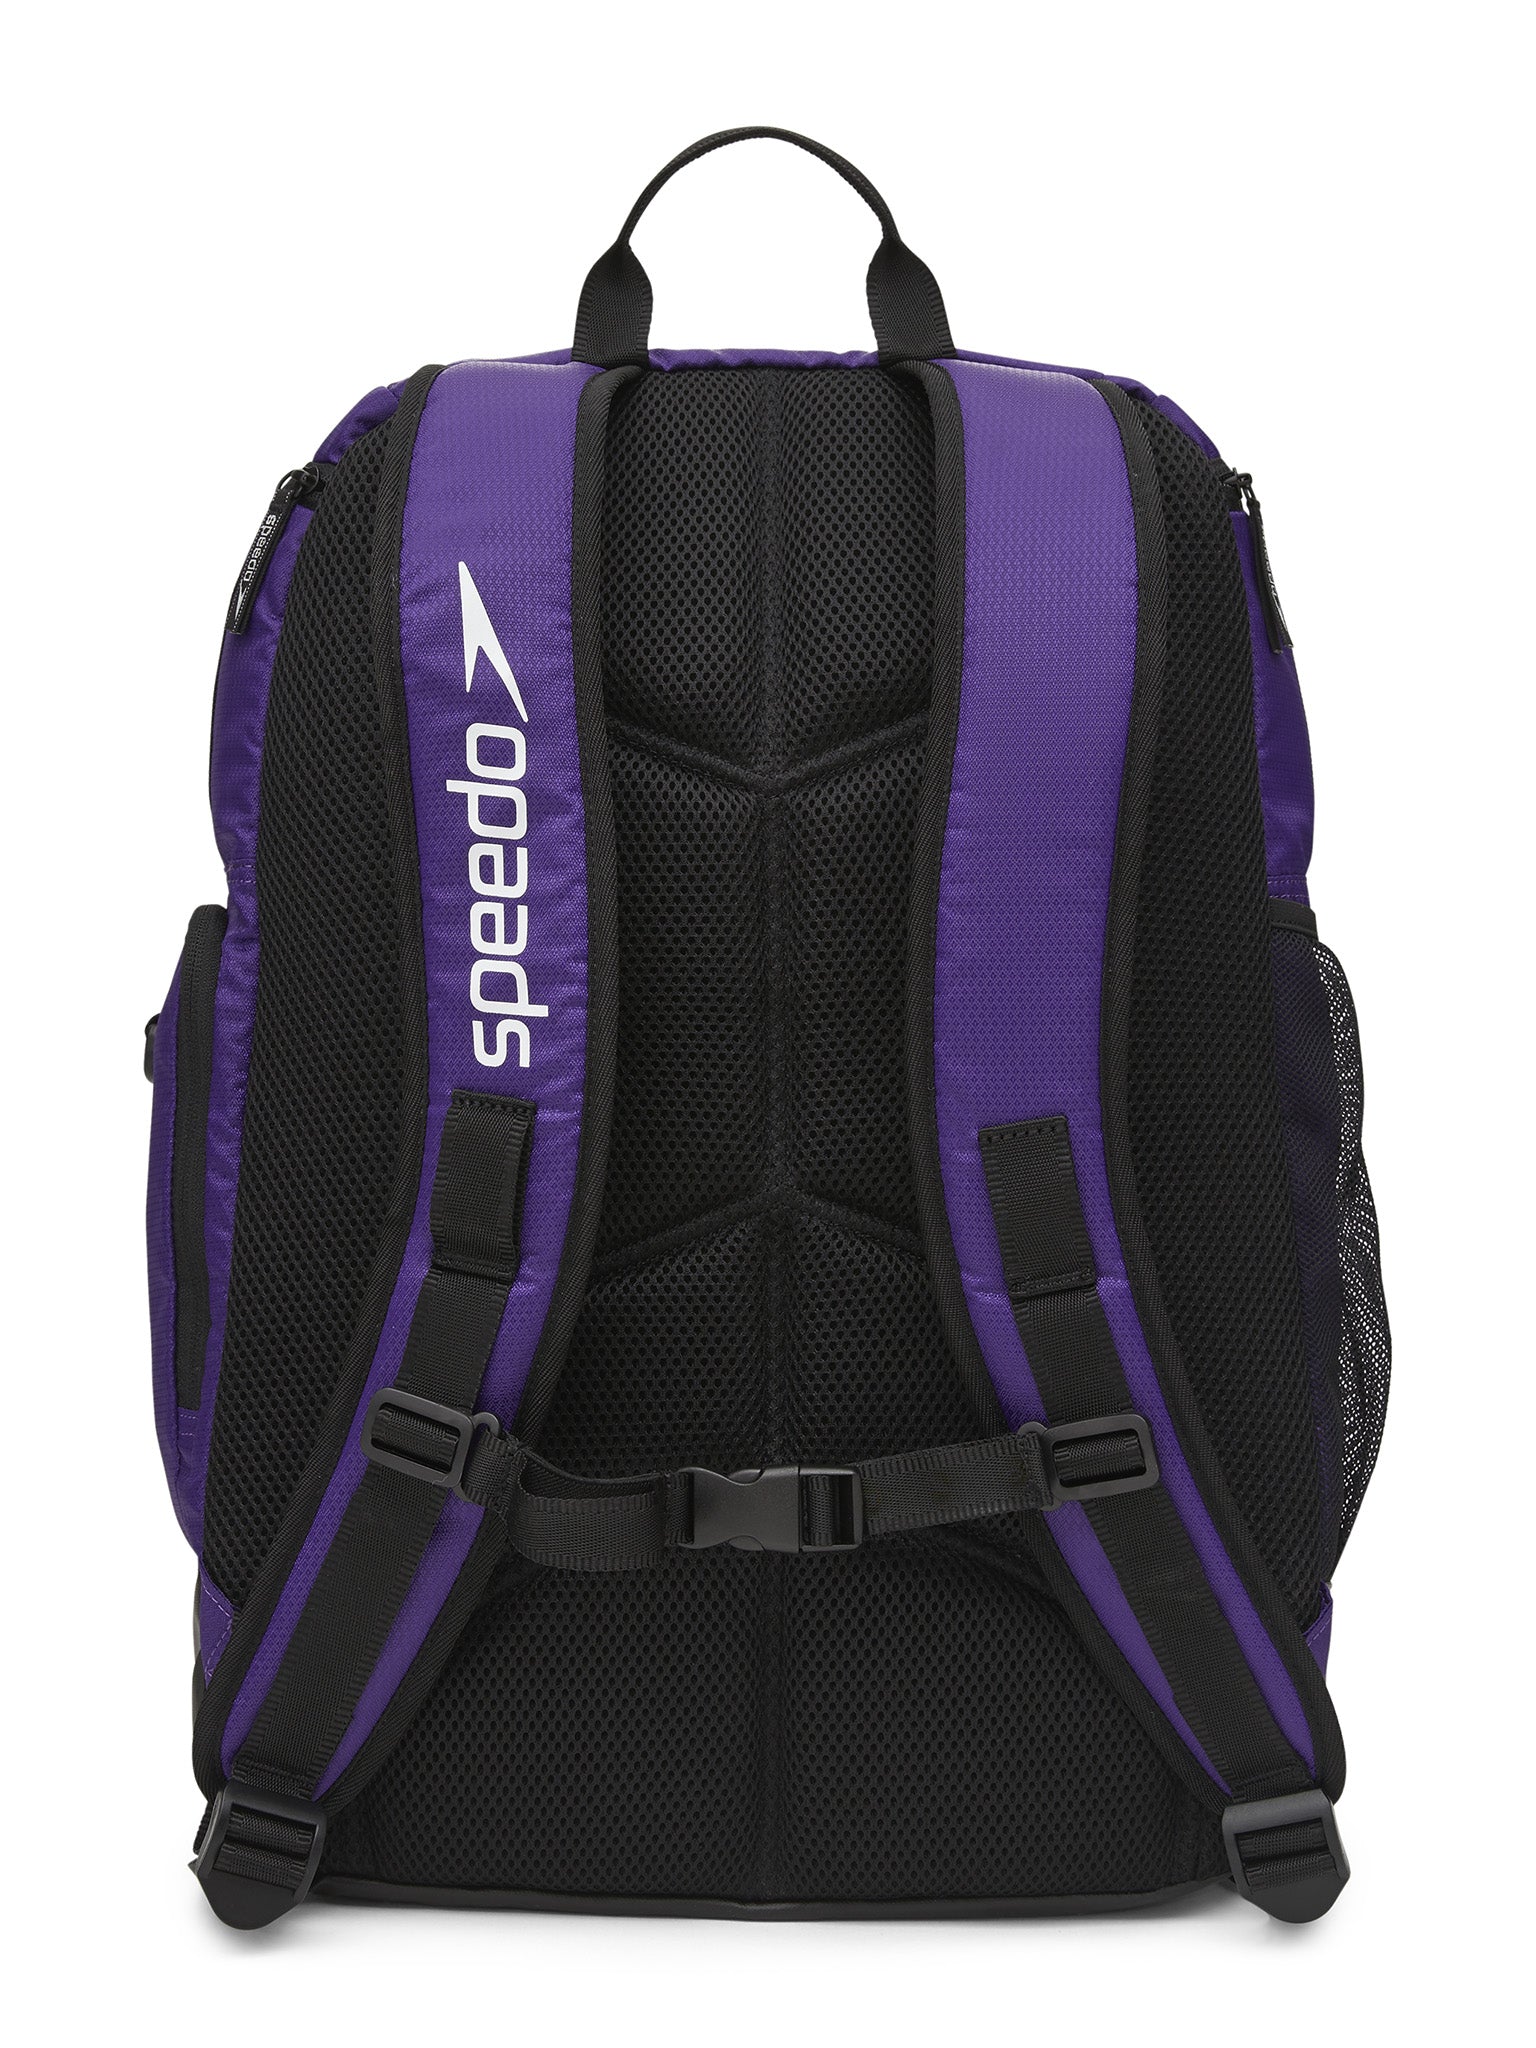 Teamster 2.0 Backpack - Purple